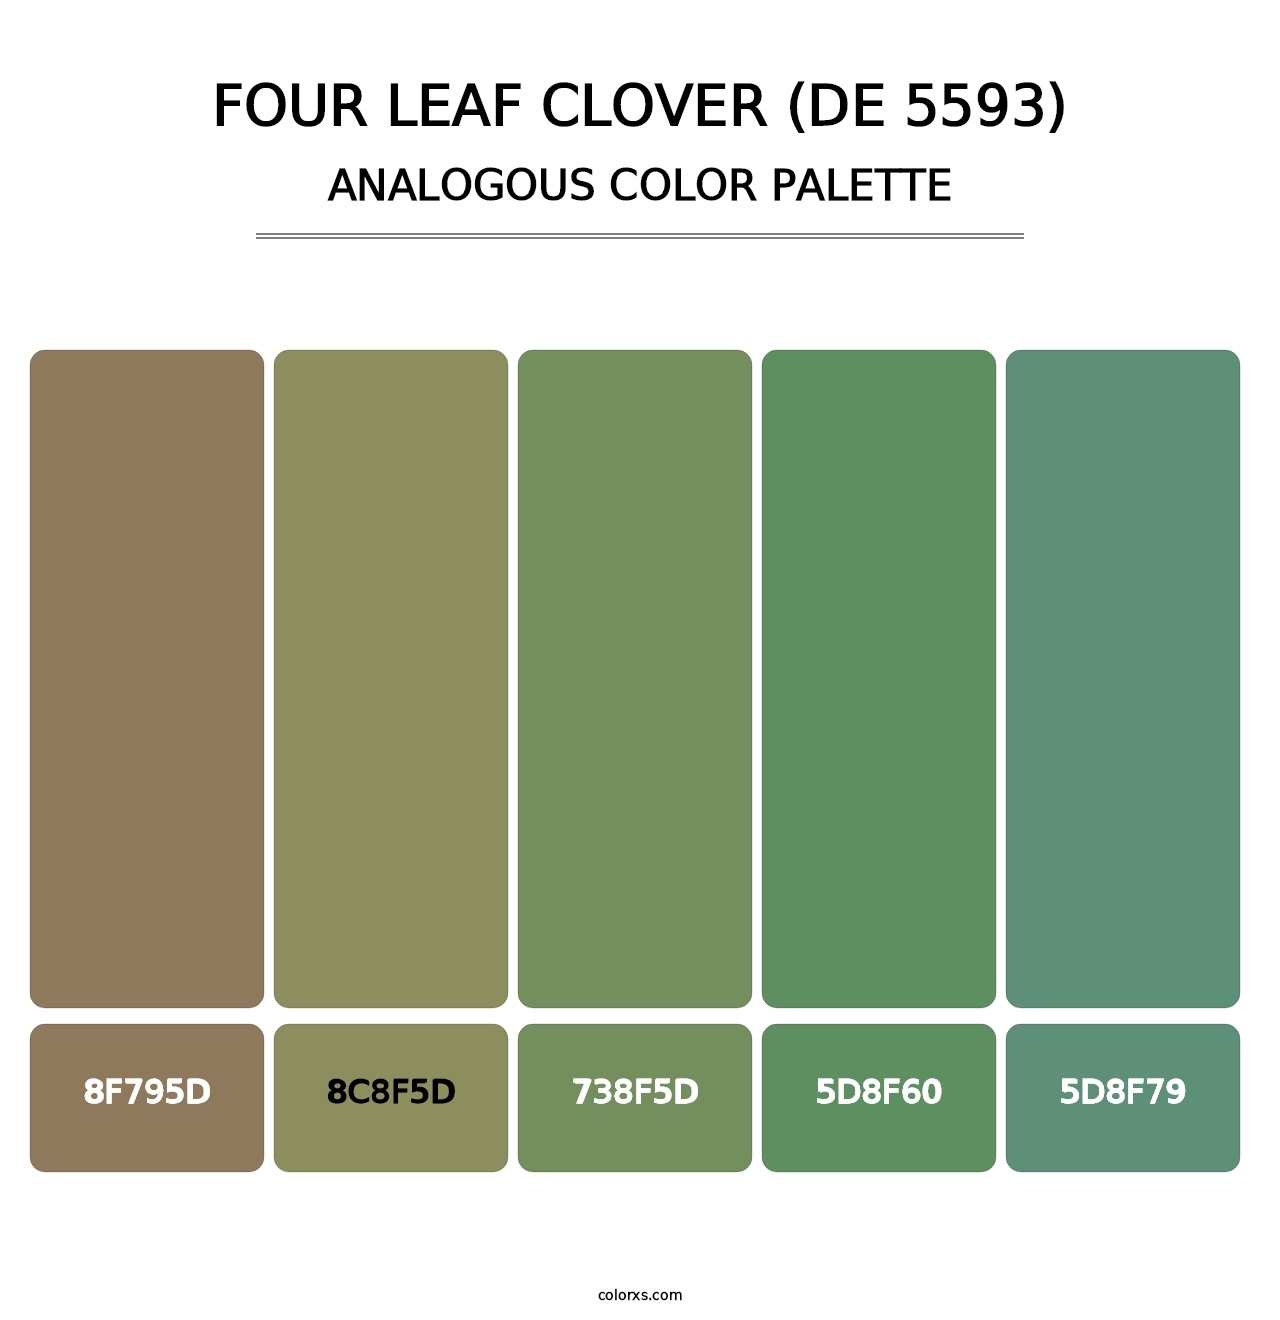 Four Leaf Clover (DE 5593) - Analogous Color Palette